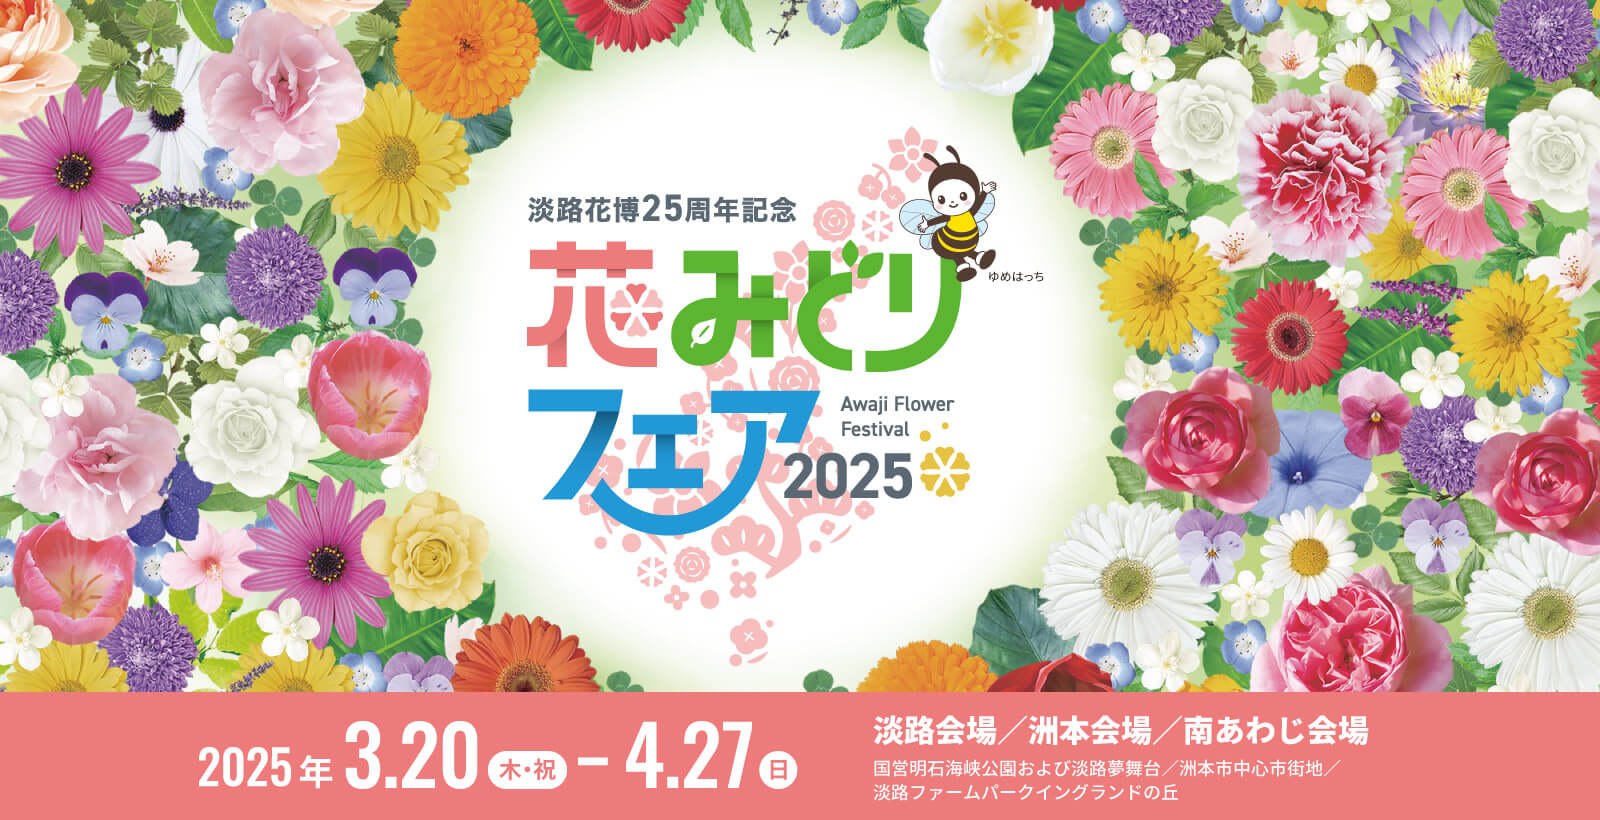 淡路花博25周年記念花みどりフェア2025 2025年3月20日-4月27日開催